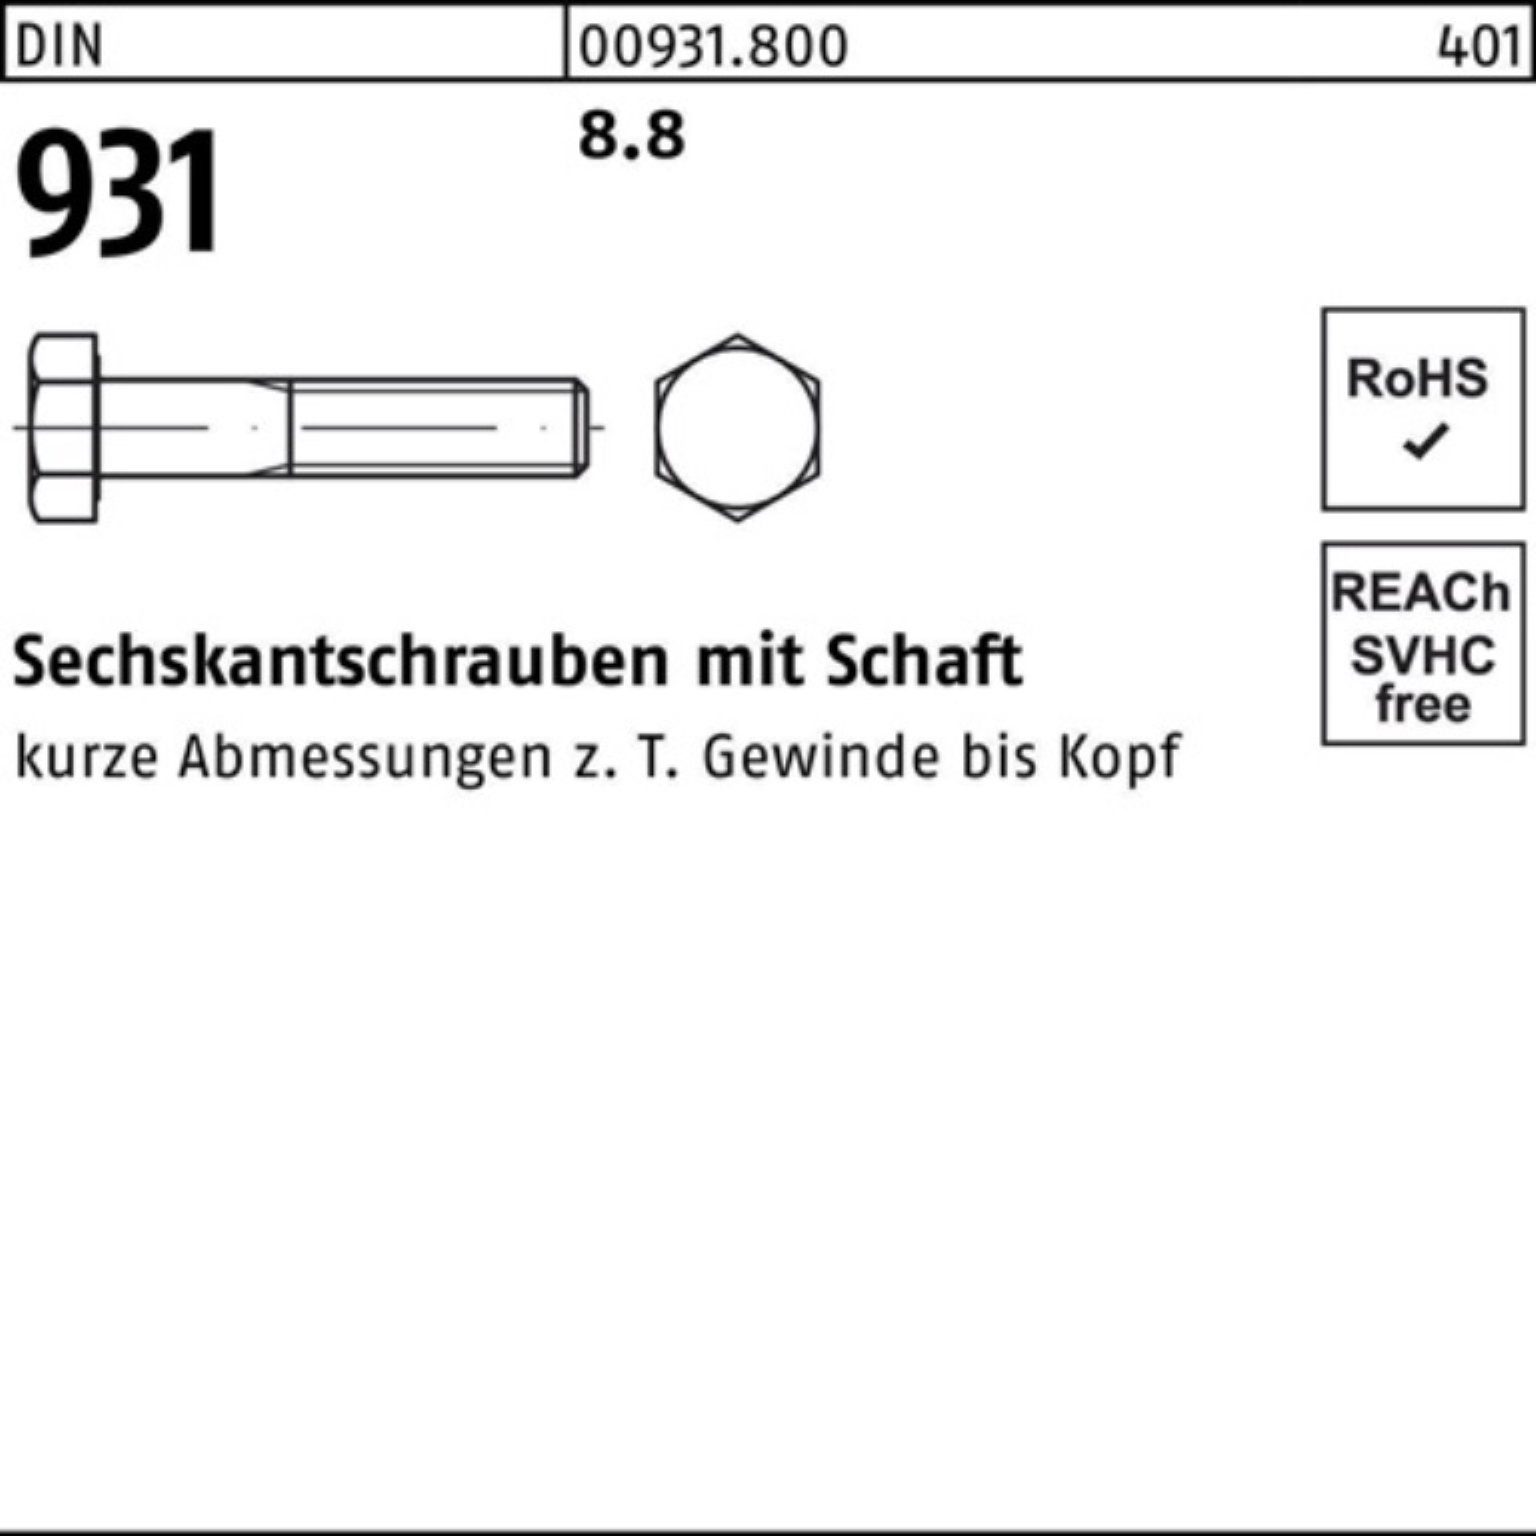 180 8.8 100 Stück Reyher Sechskantschraube DIN Sechskantschraube 100er Pack 931 DIN Schaft M6x